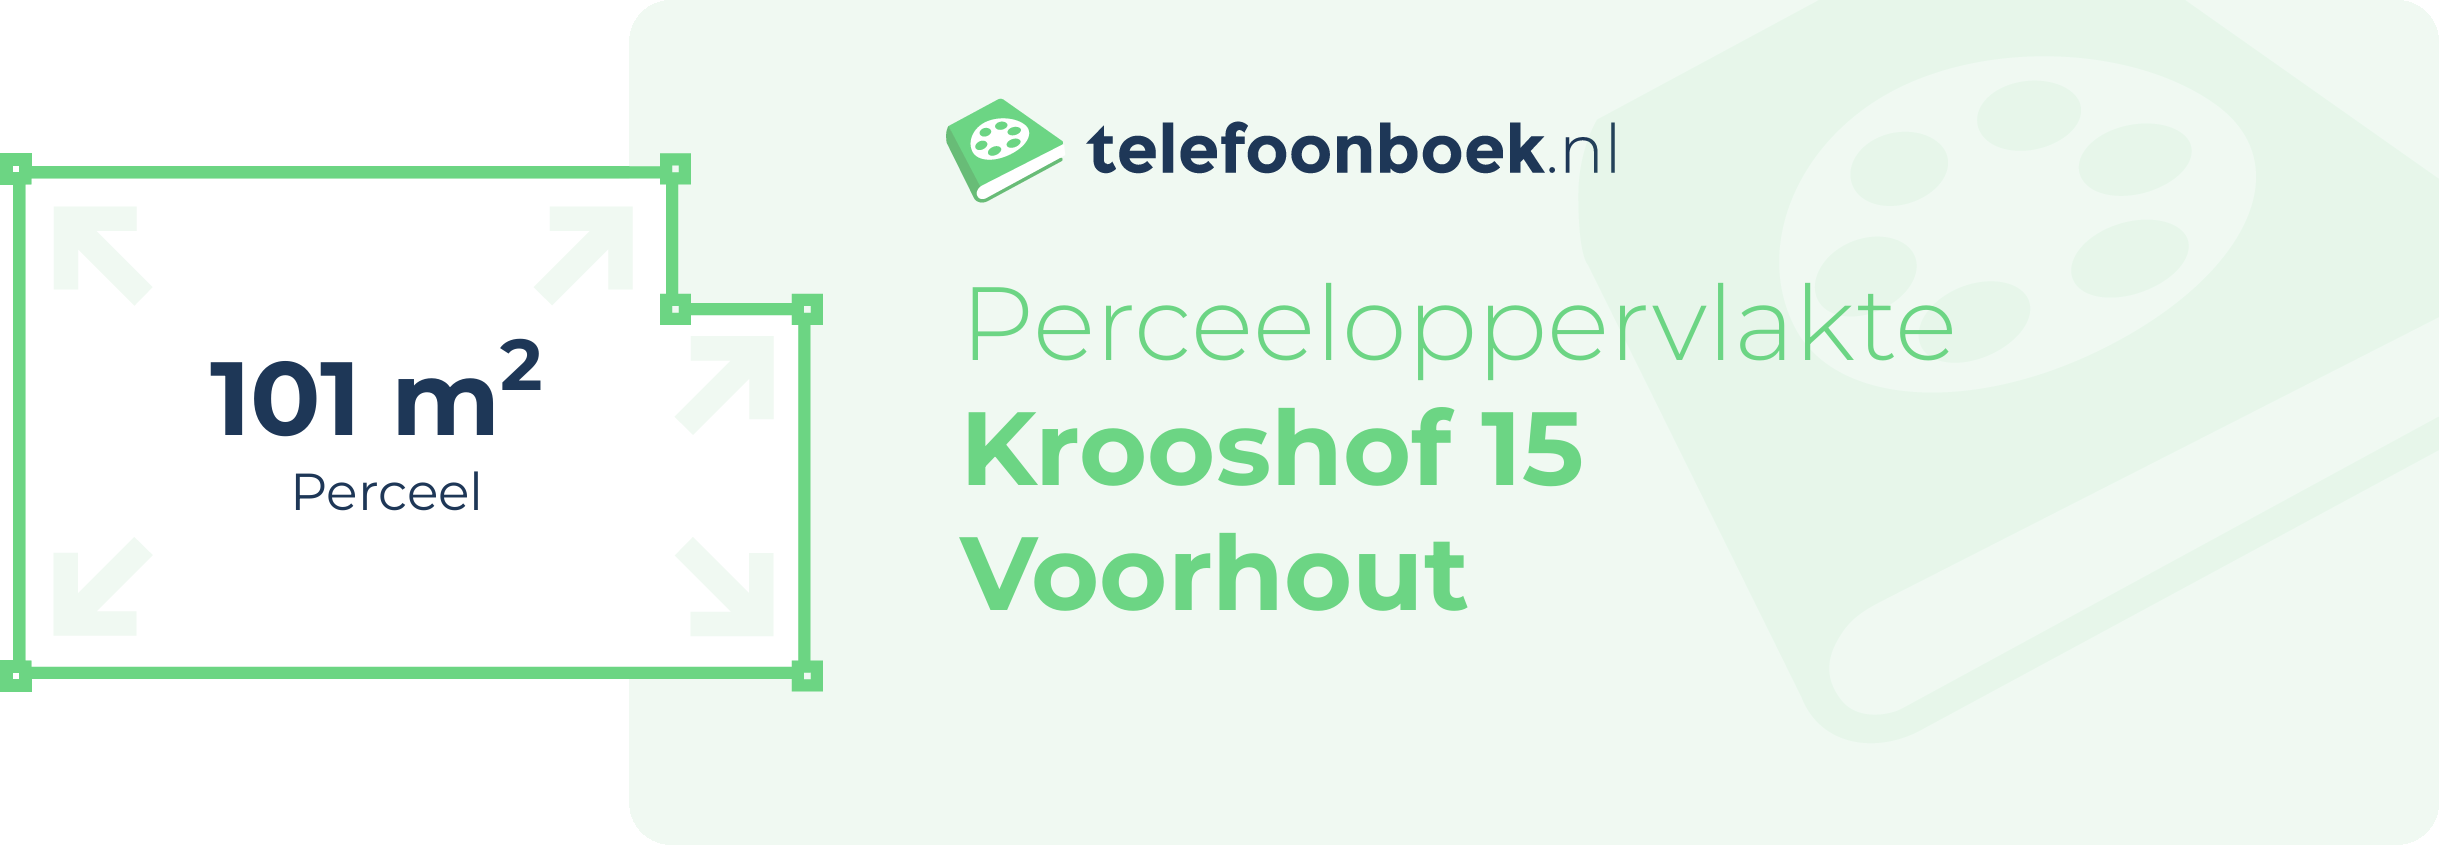 Perceeloppervlakte Krooshof 15 Voorhout